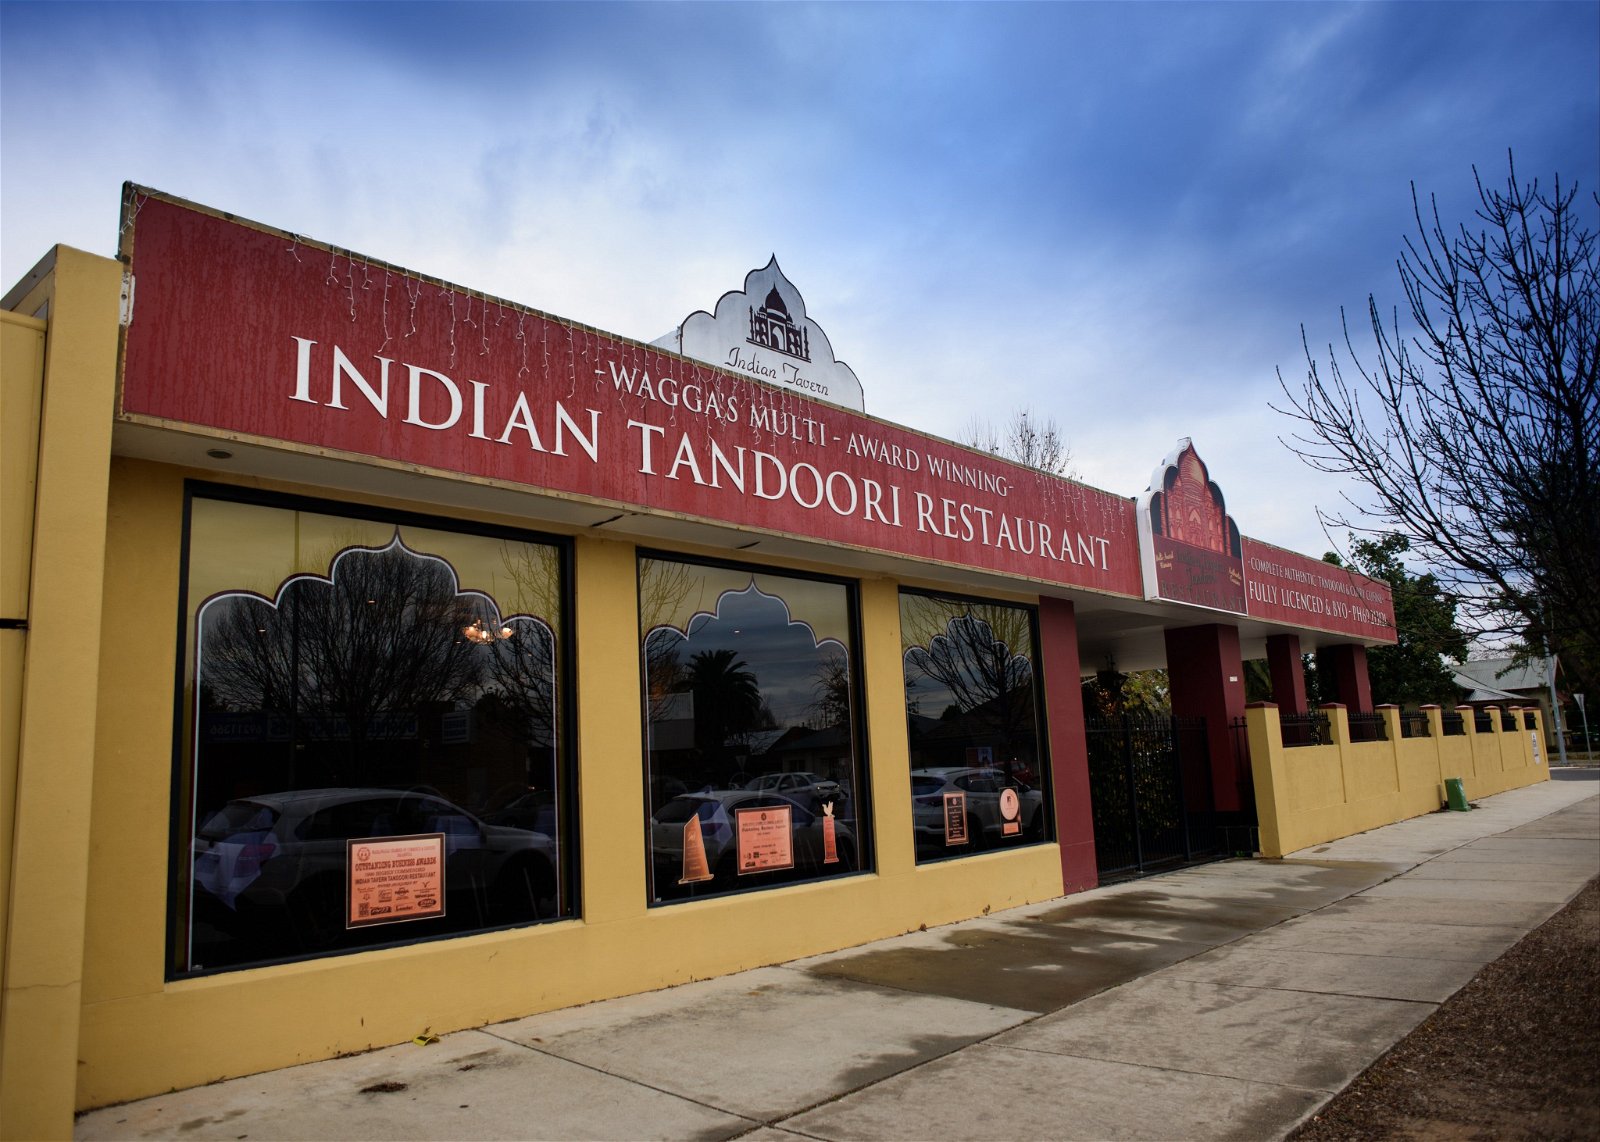 Indian Tavern Tandoori - Tourism Gold Coast